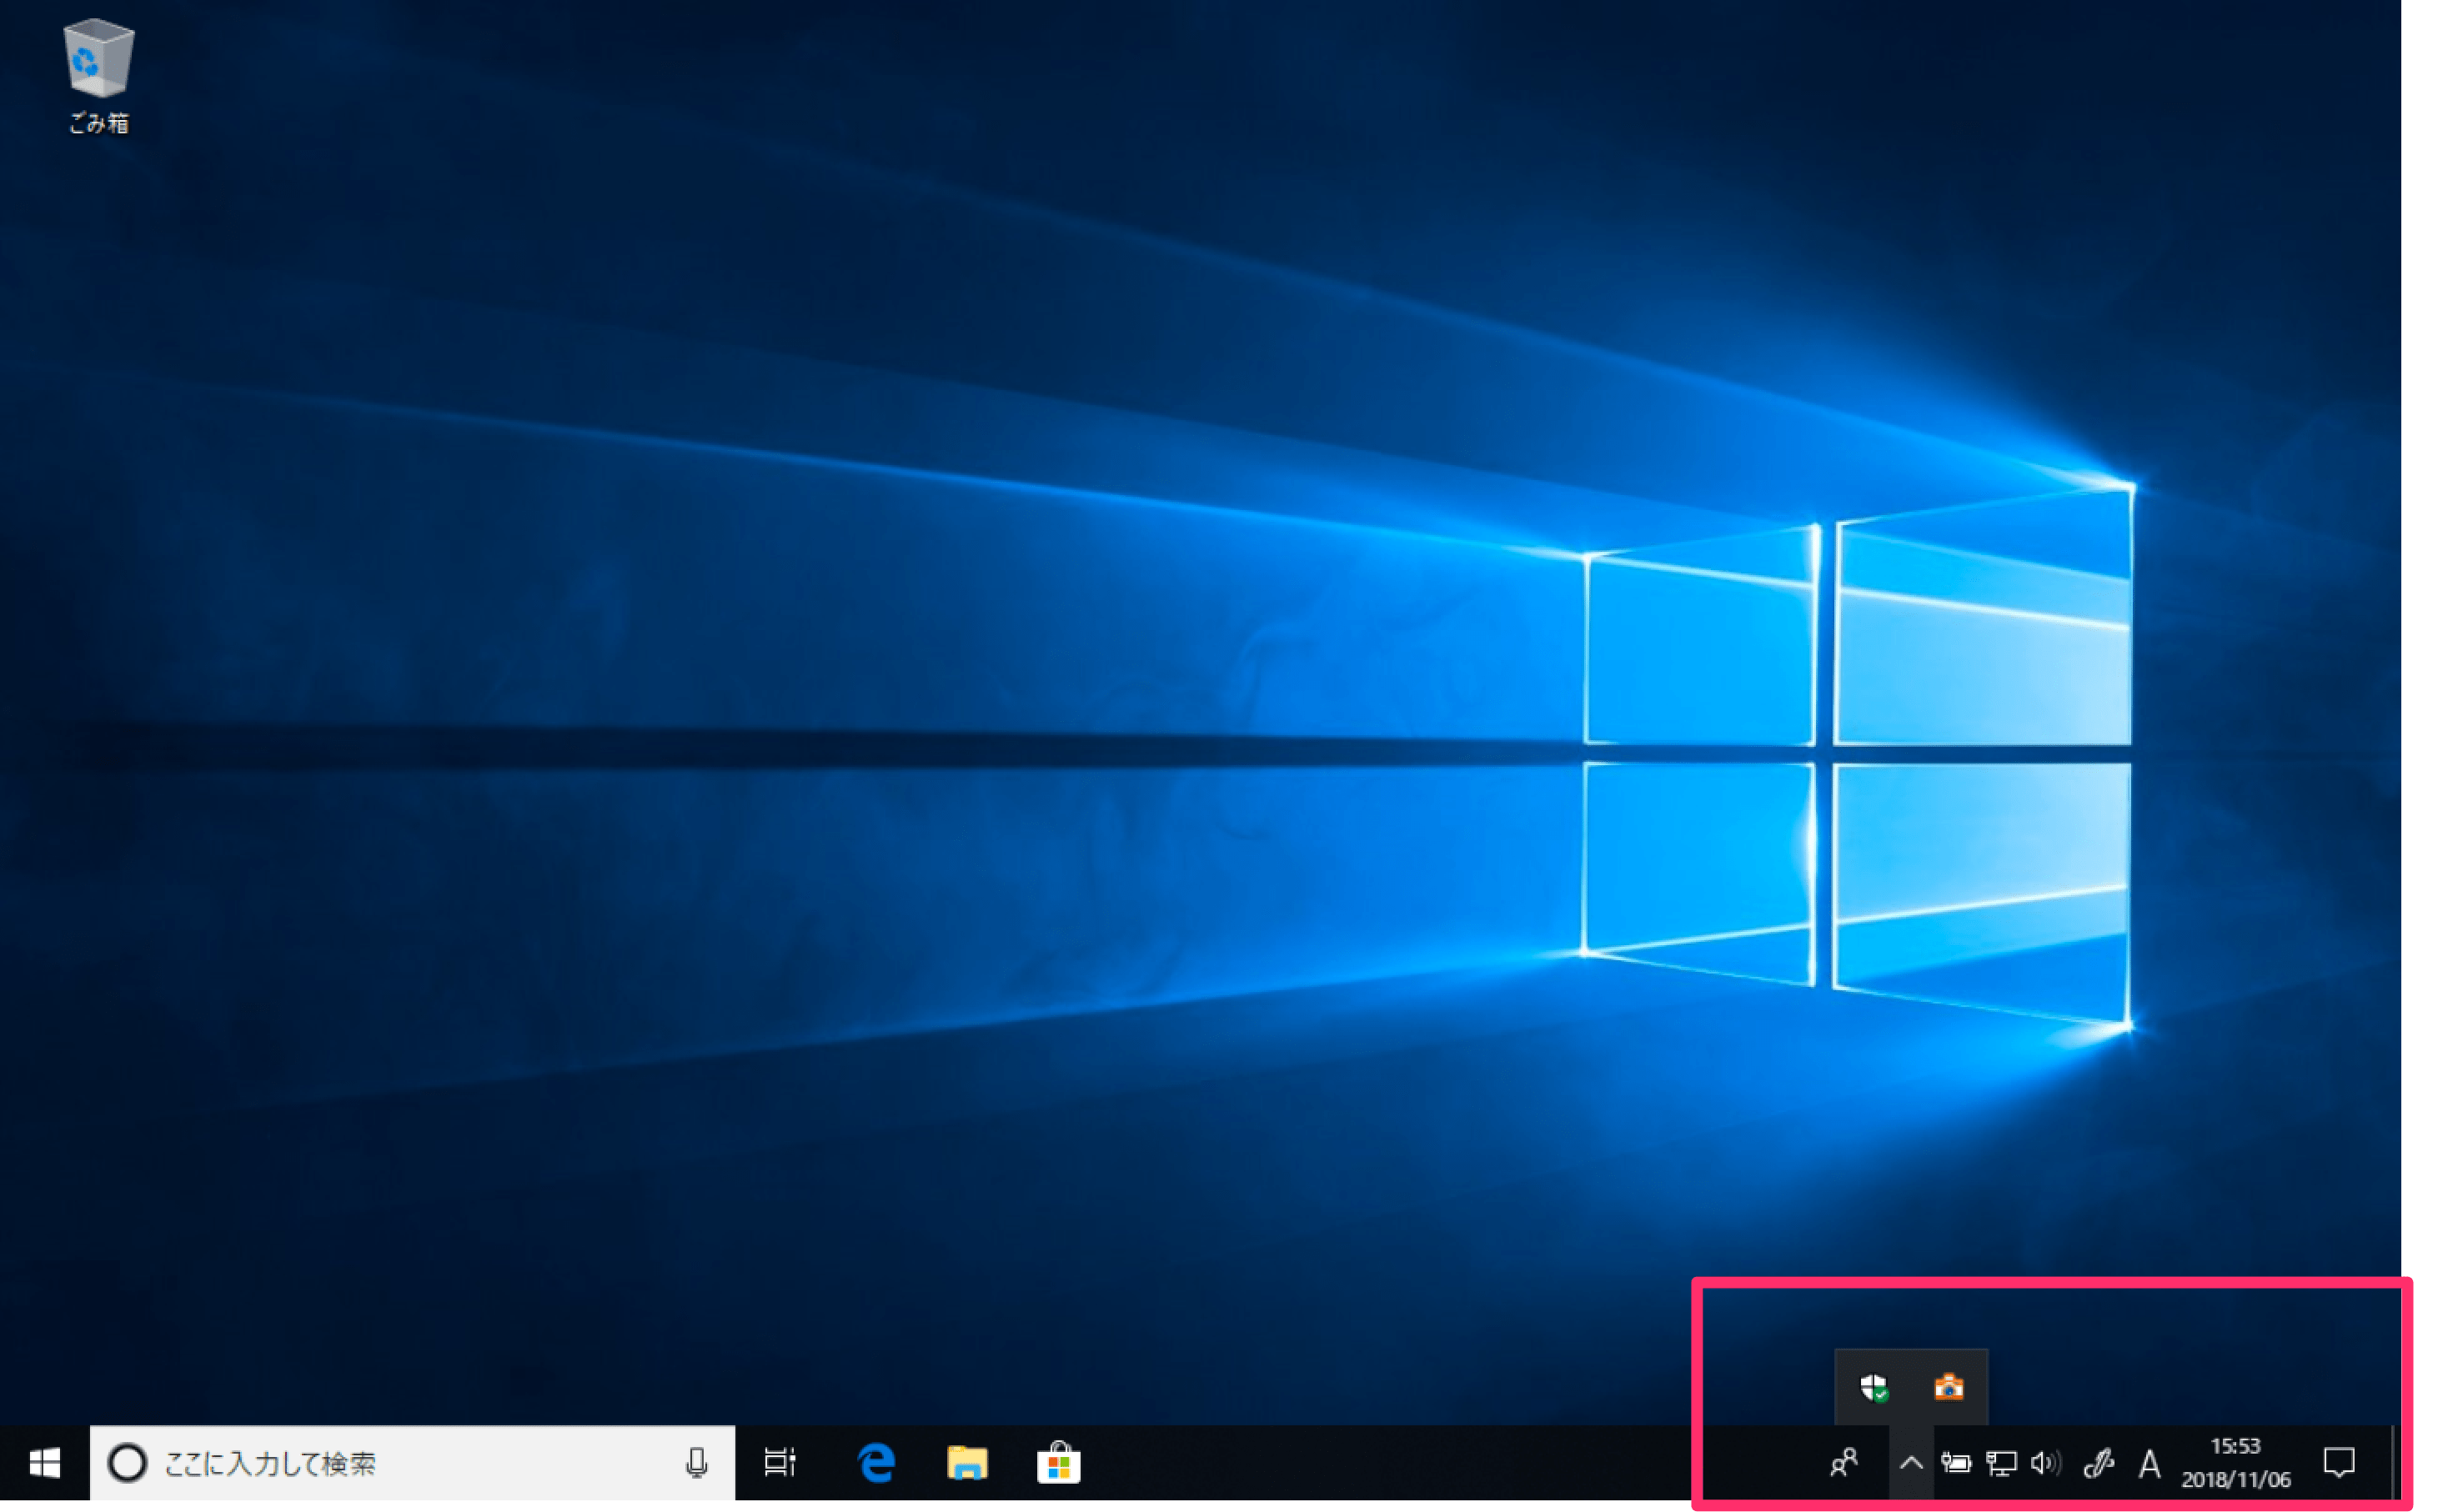 Windows 10のタスクバーに表示するアイコンの選択方法。通知領域を使いやすく設定しよう